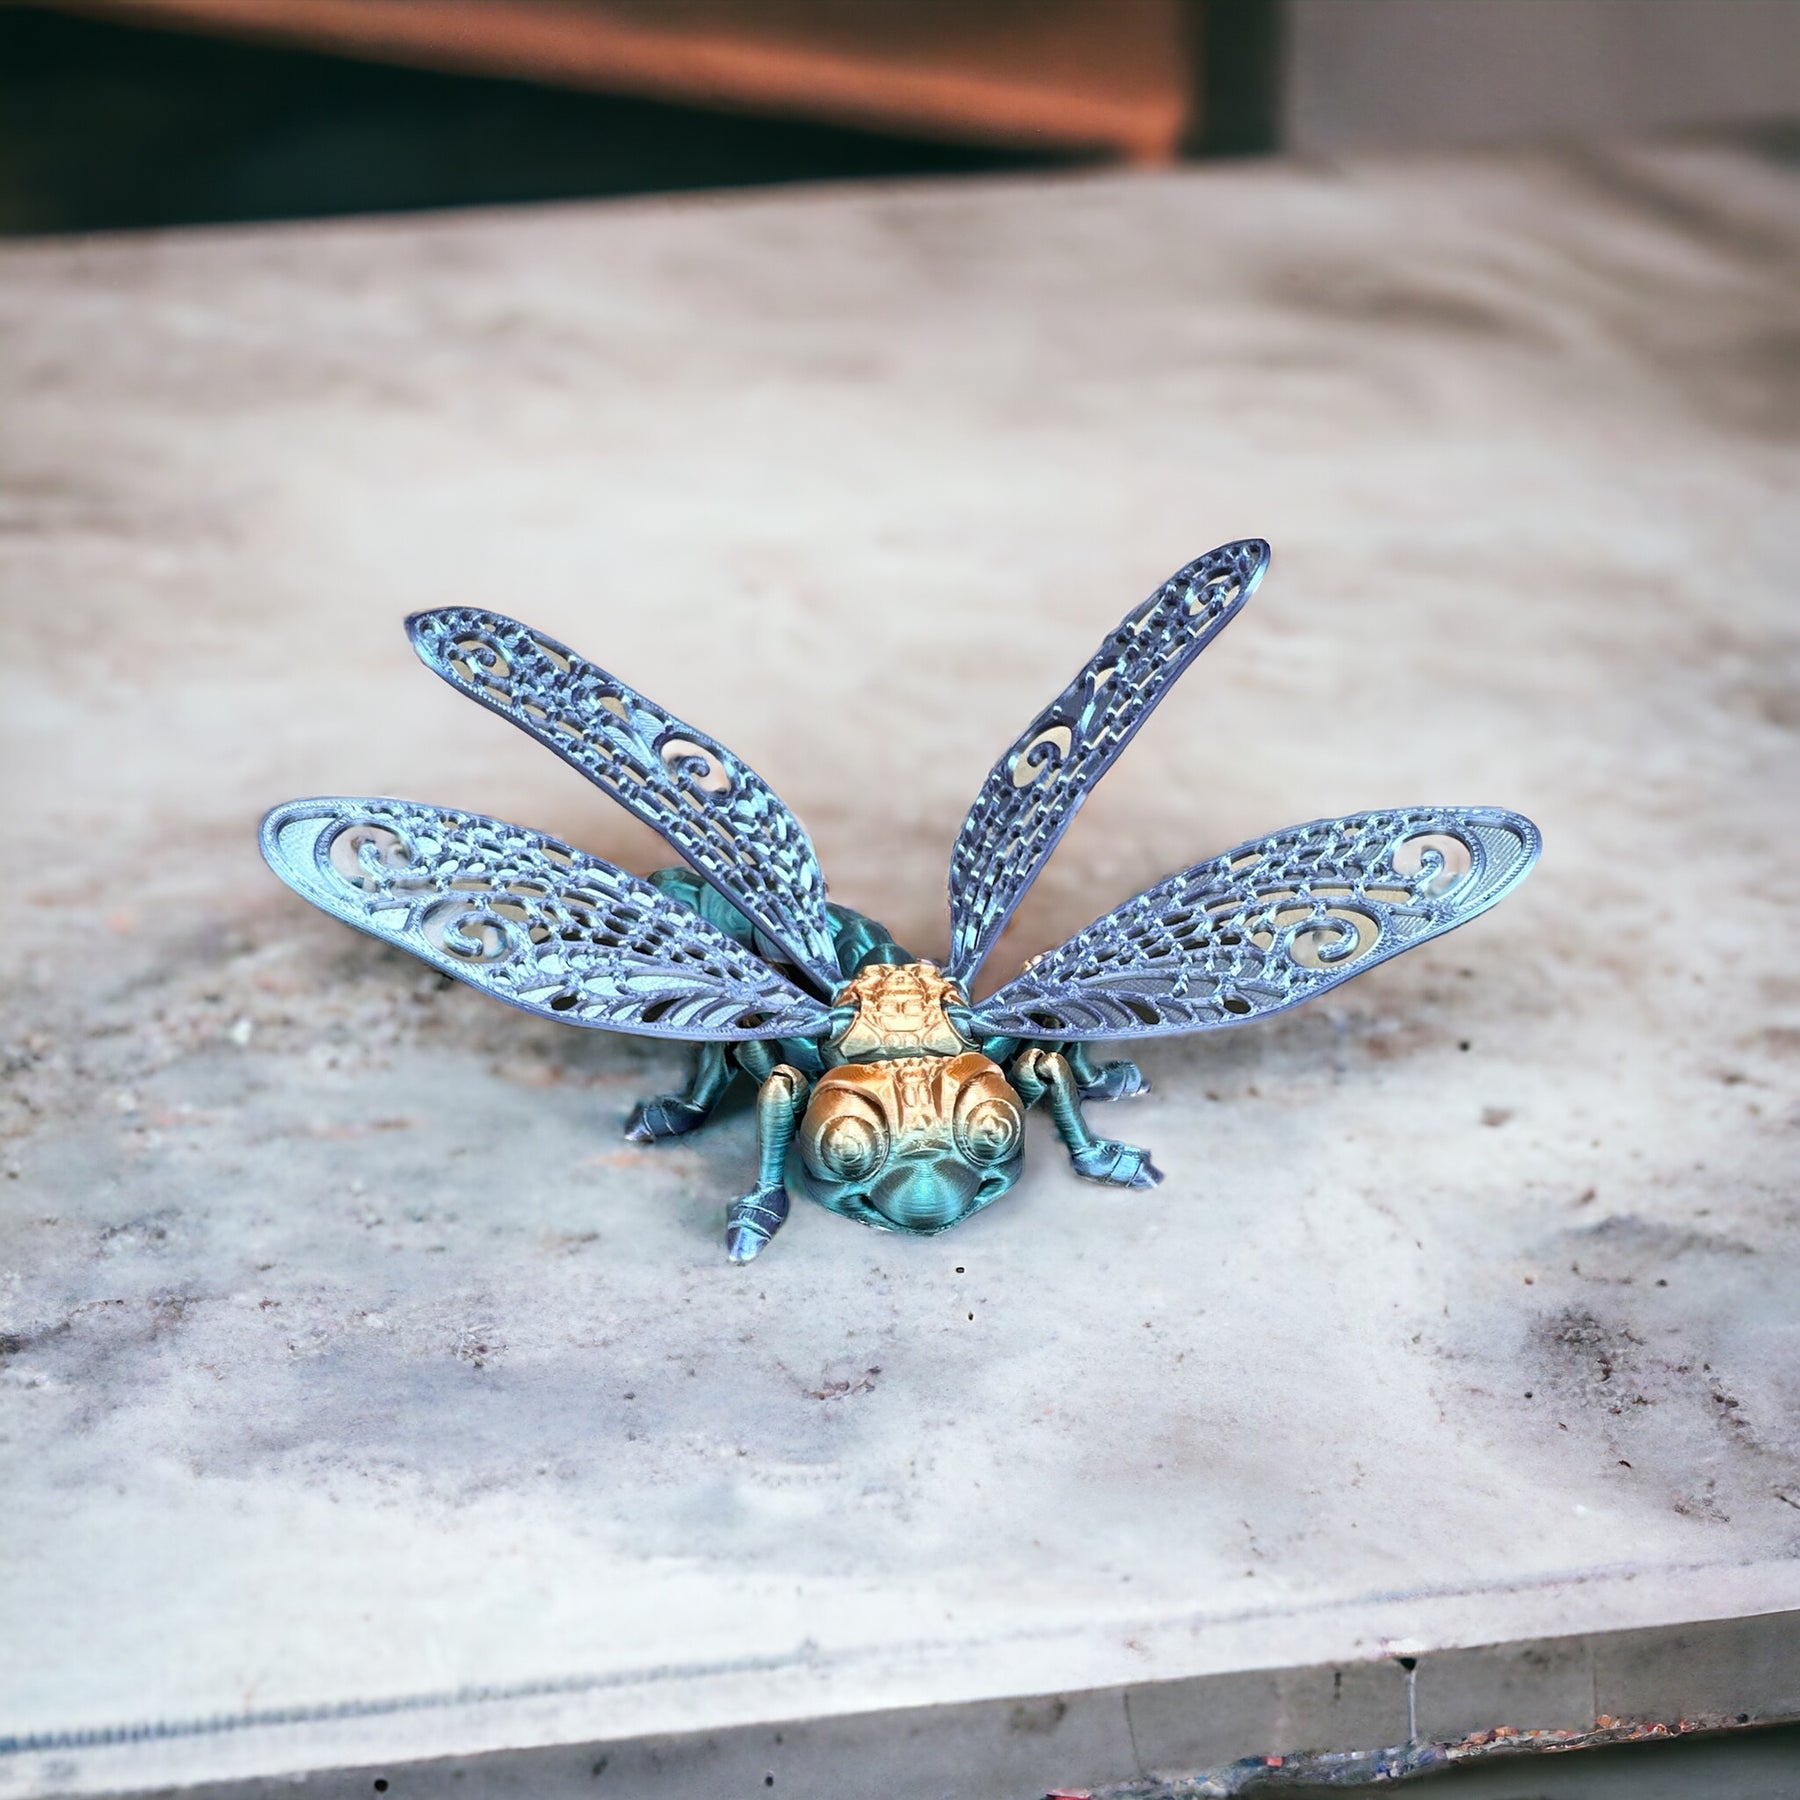 Flexible Libelle - Natürliches Spielzeug aus nachhaltigem 3D-Druck